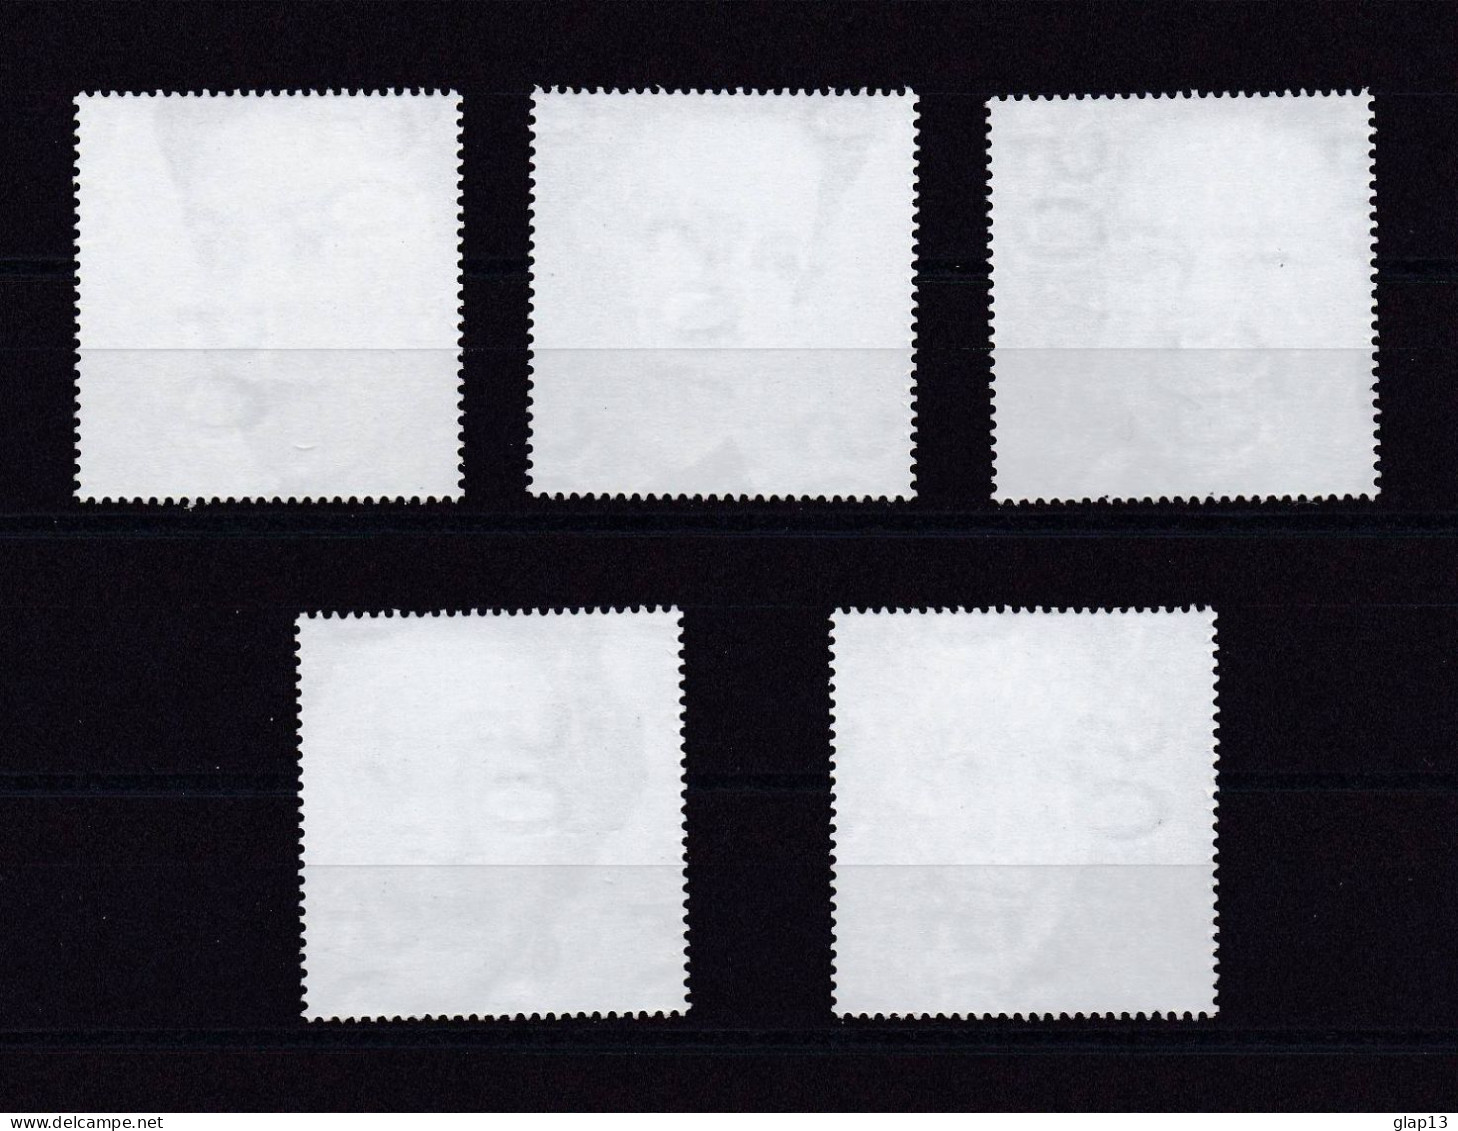 GRANDE-BRETAGNE 2002 TIMBRE N°2301/05 NEUF** ELIZABETH II - Unused Stamps